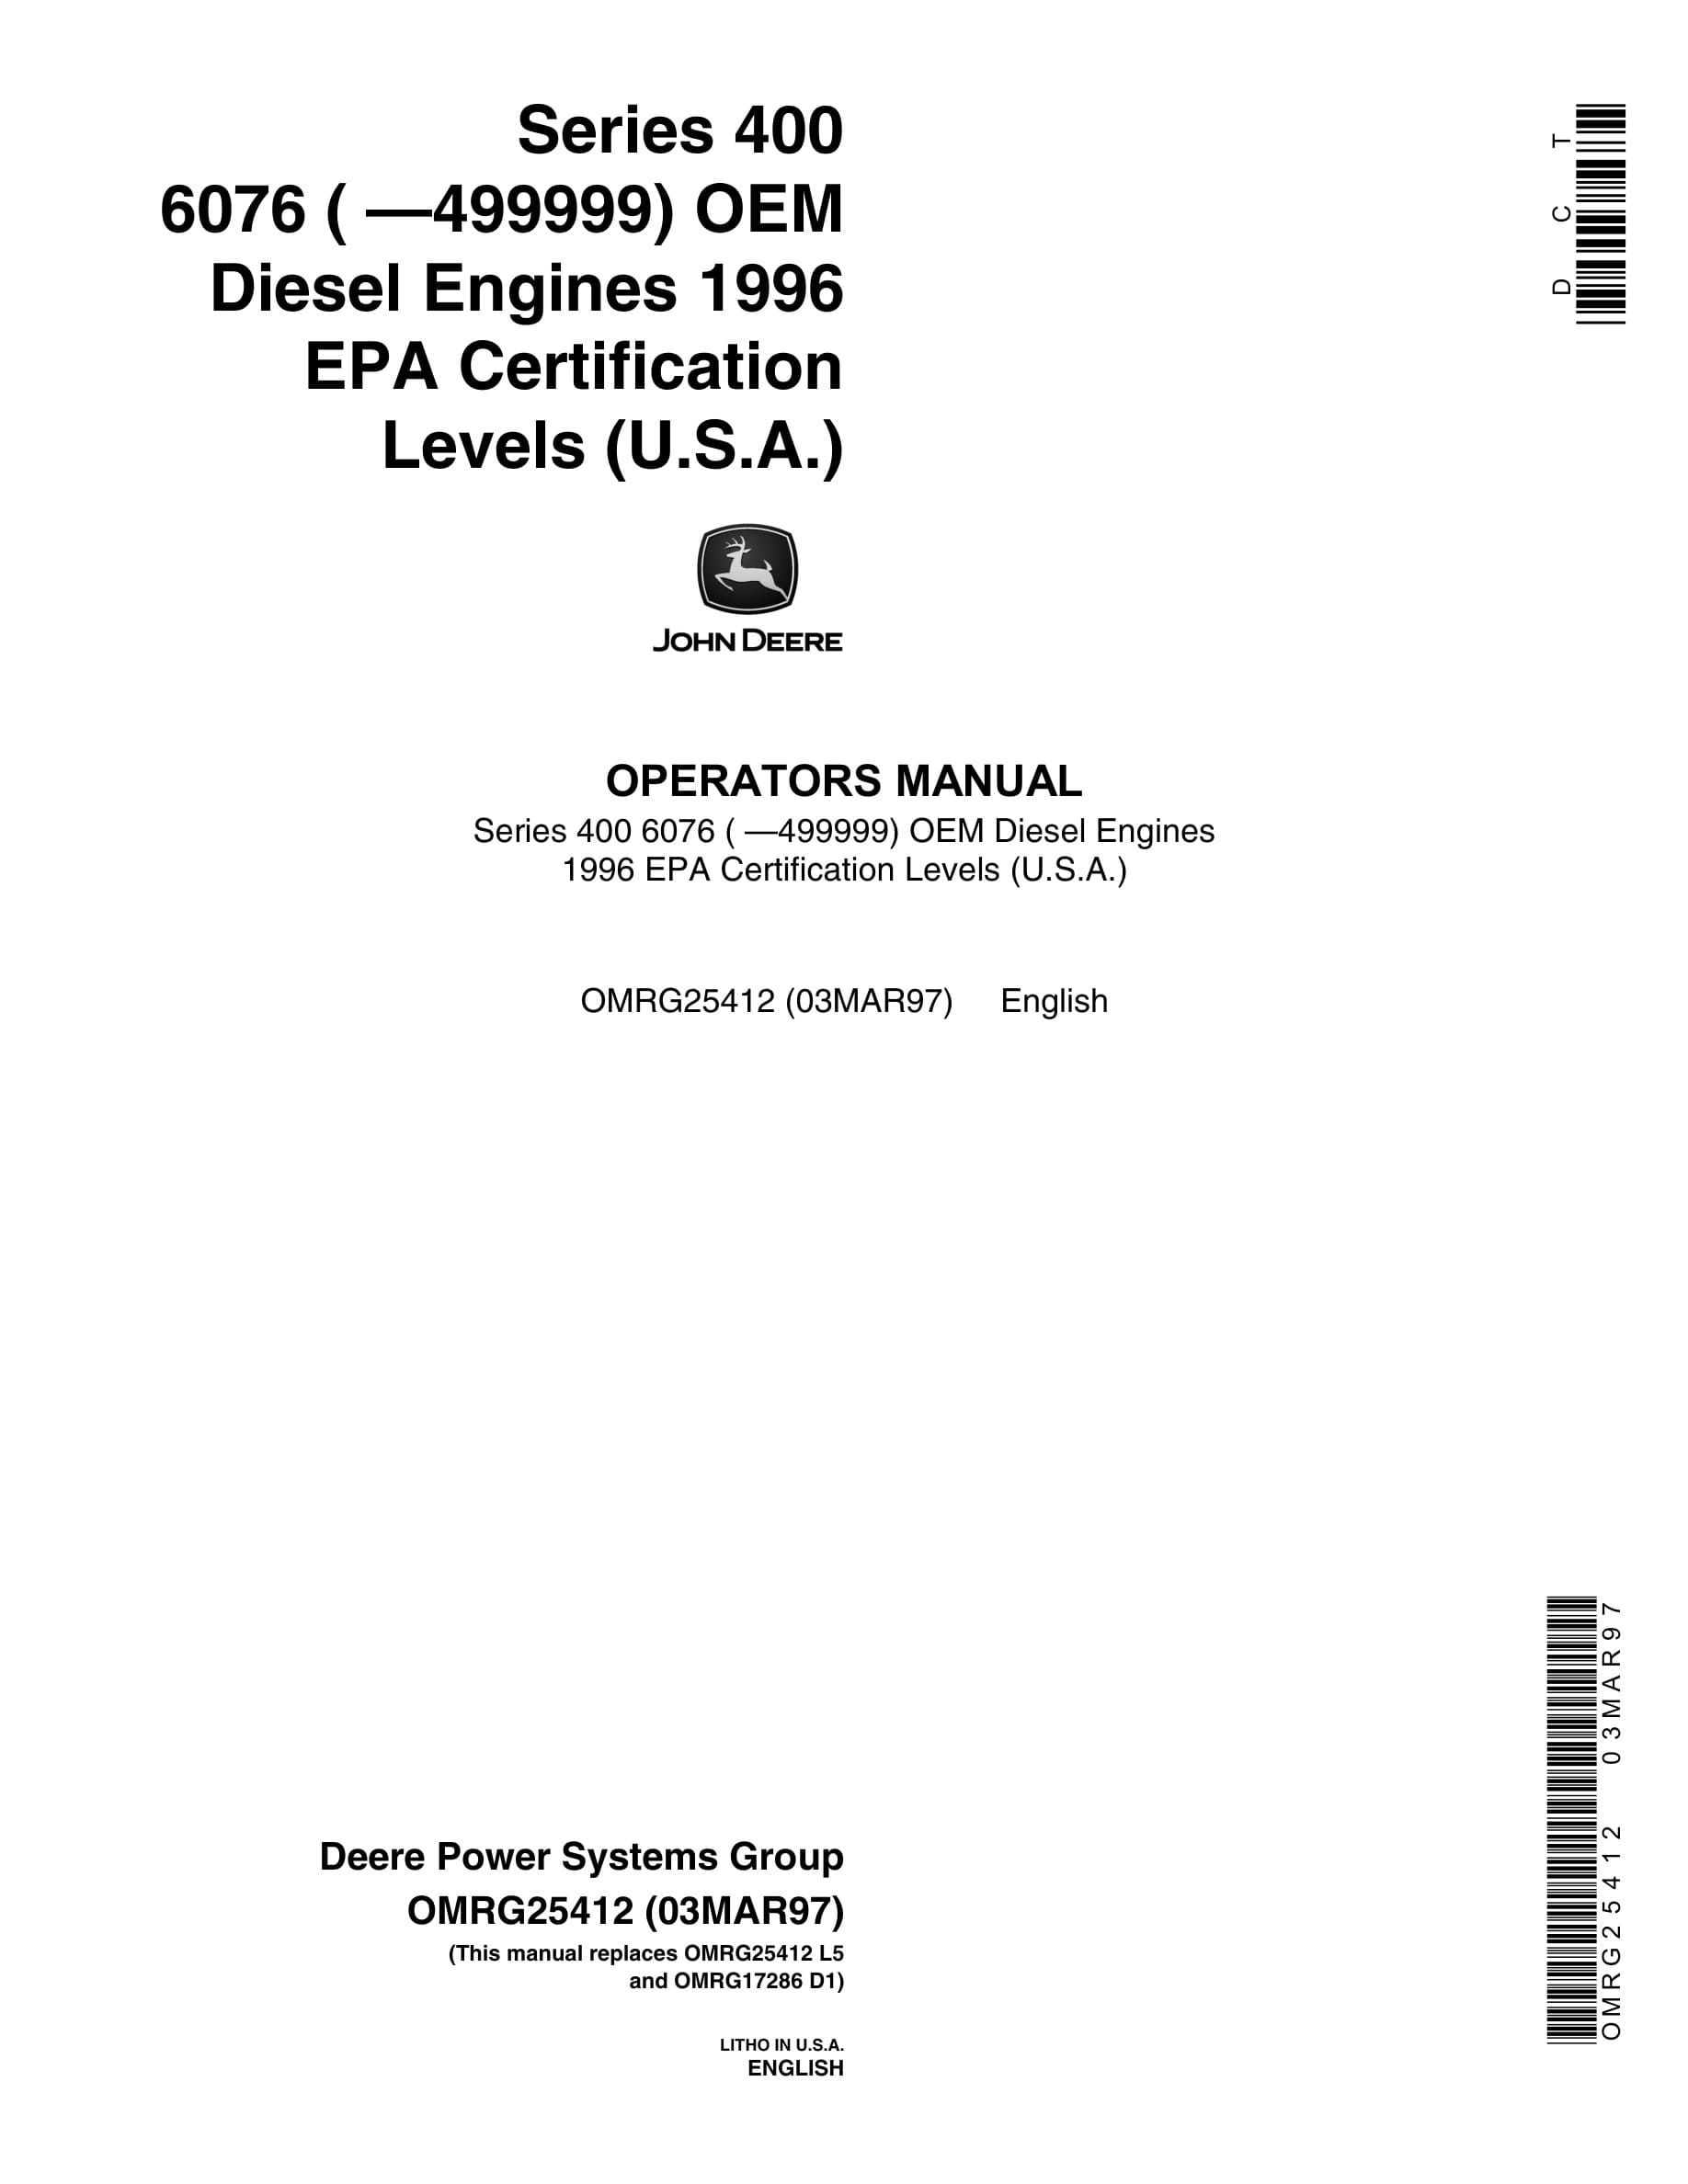 John Deere PowerTech Series 400 6076 OEM Diesel Engines Operator Manual OMRG25412-1